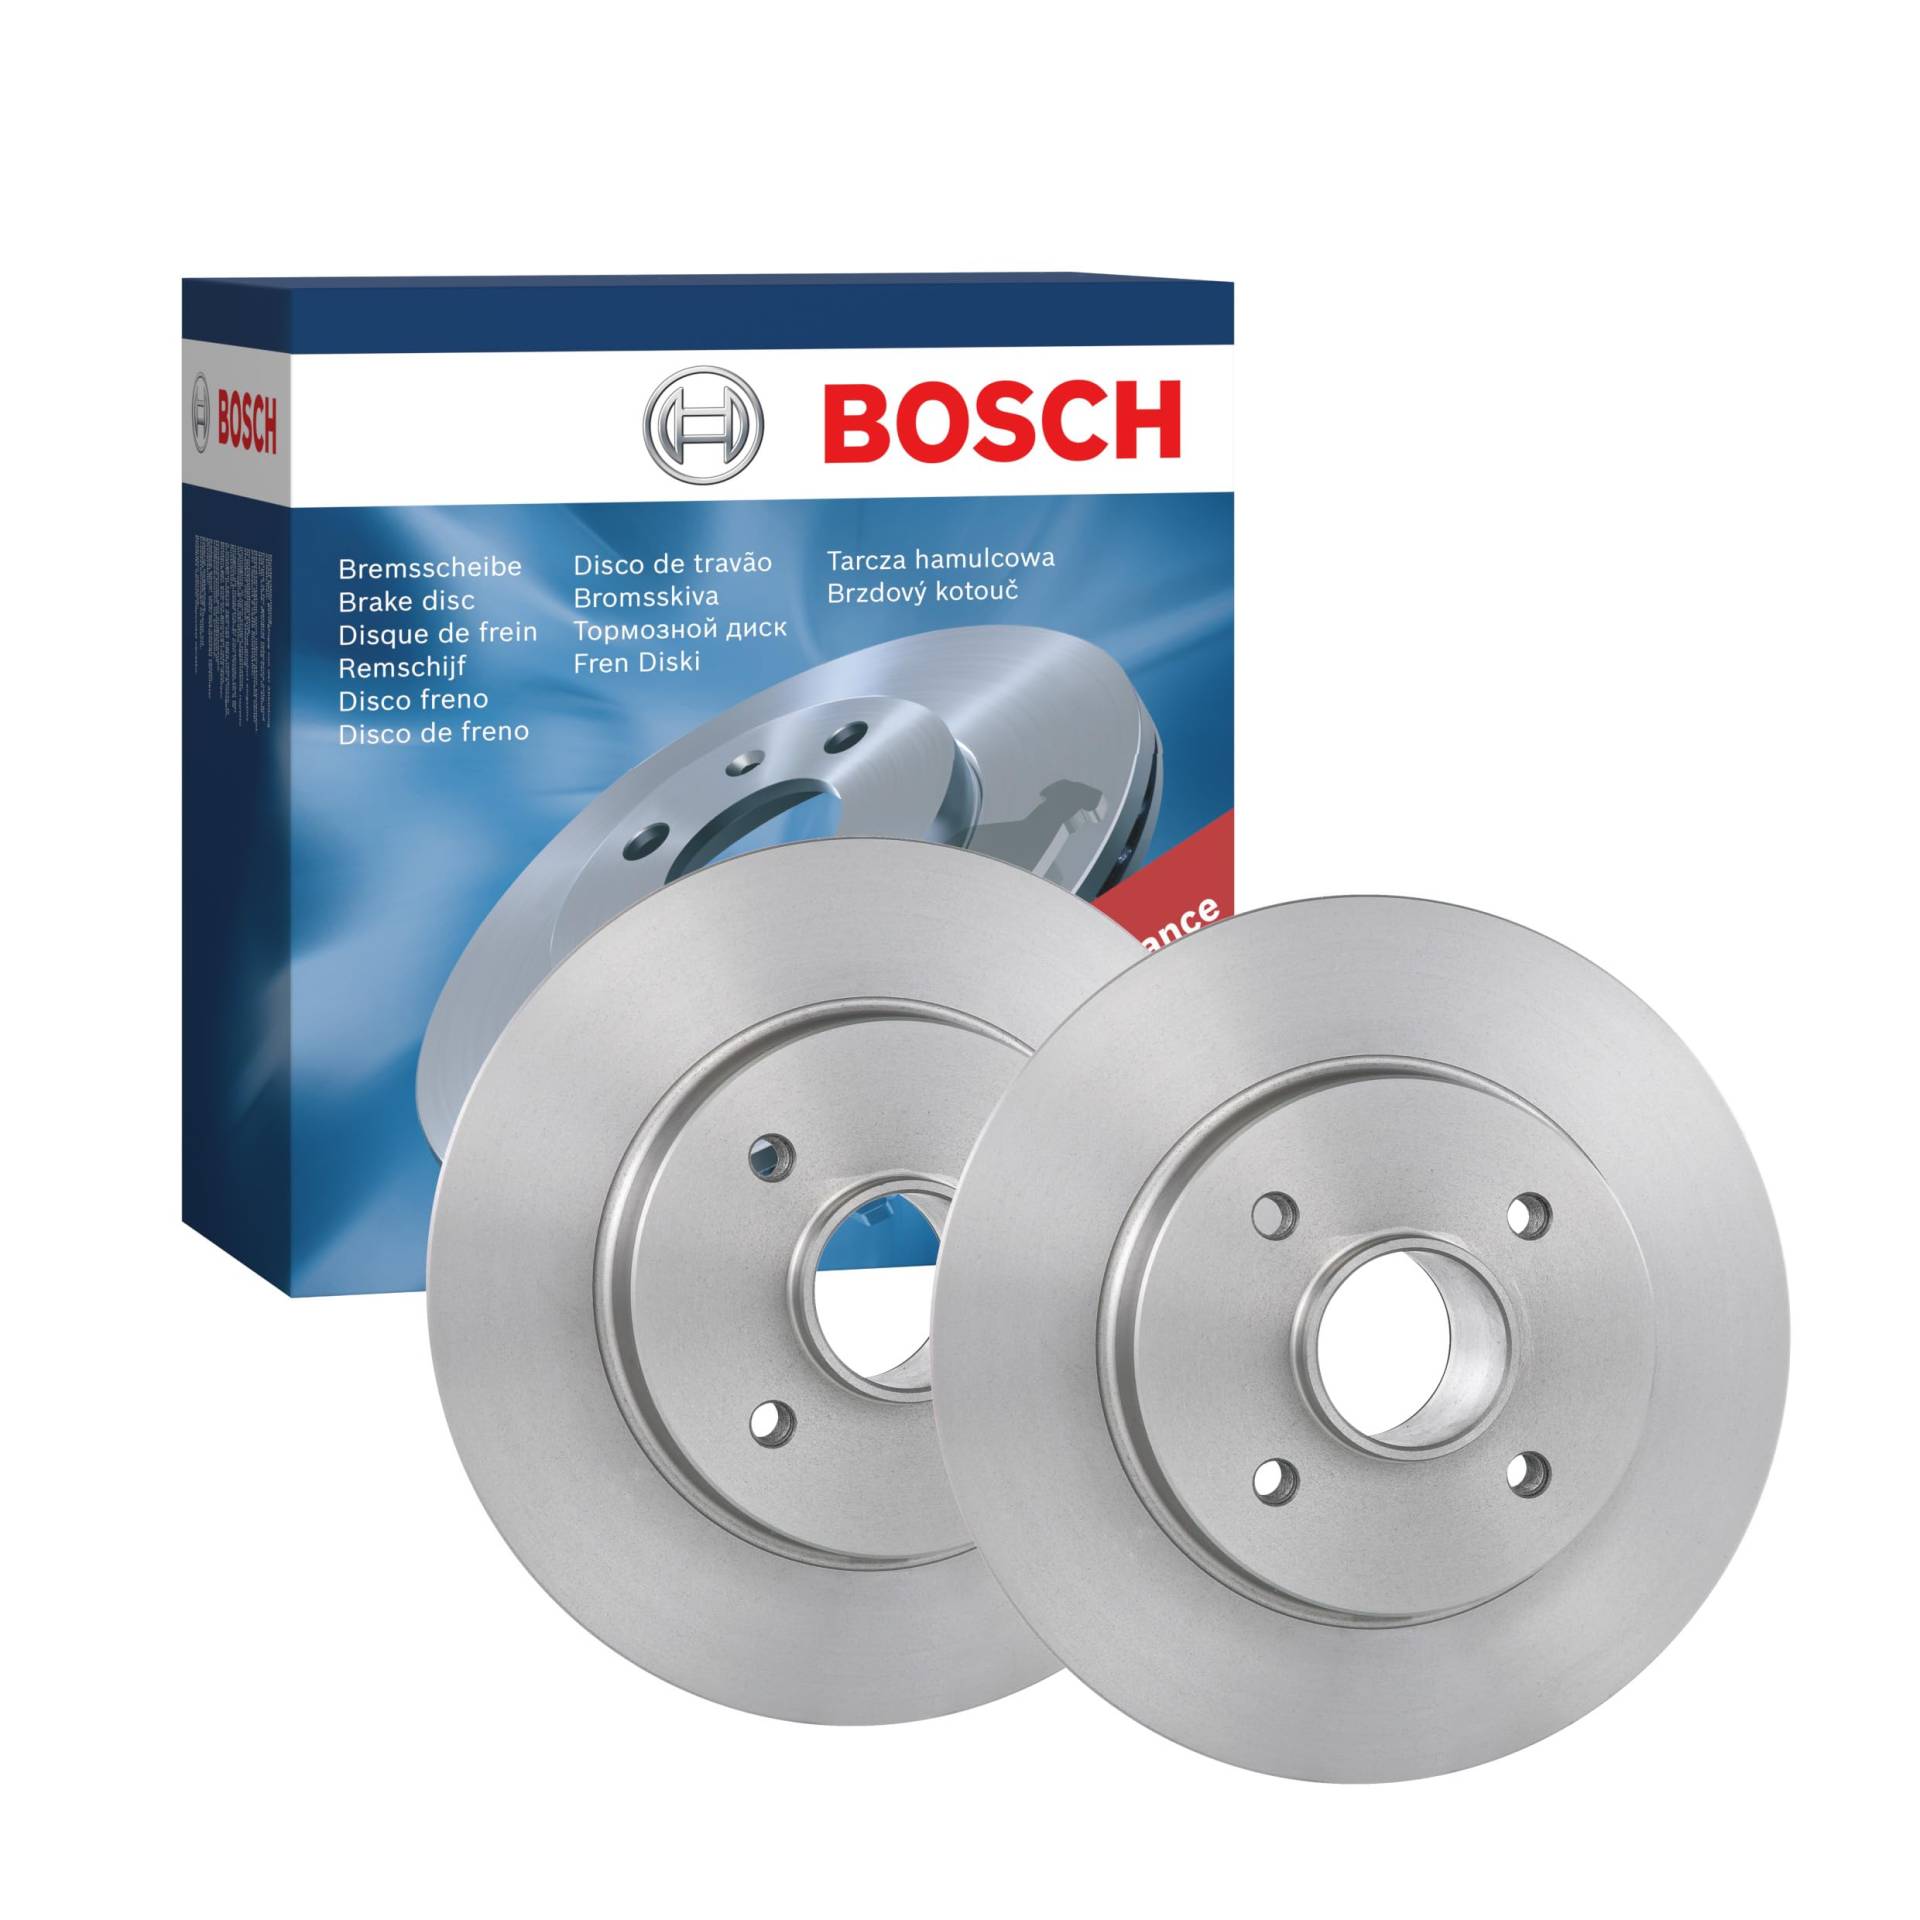 Bosch BD1245 Bremsscheiben - Hinterachse - ECE-R90 Zertifizierung - zwei Bremsscheiben pro Set von Bosch Automotive